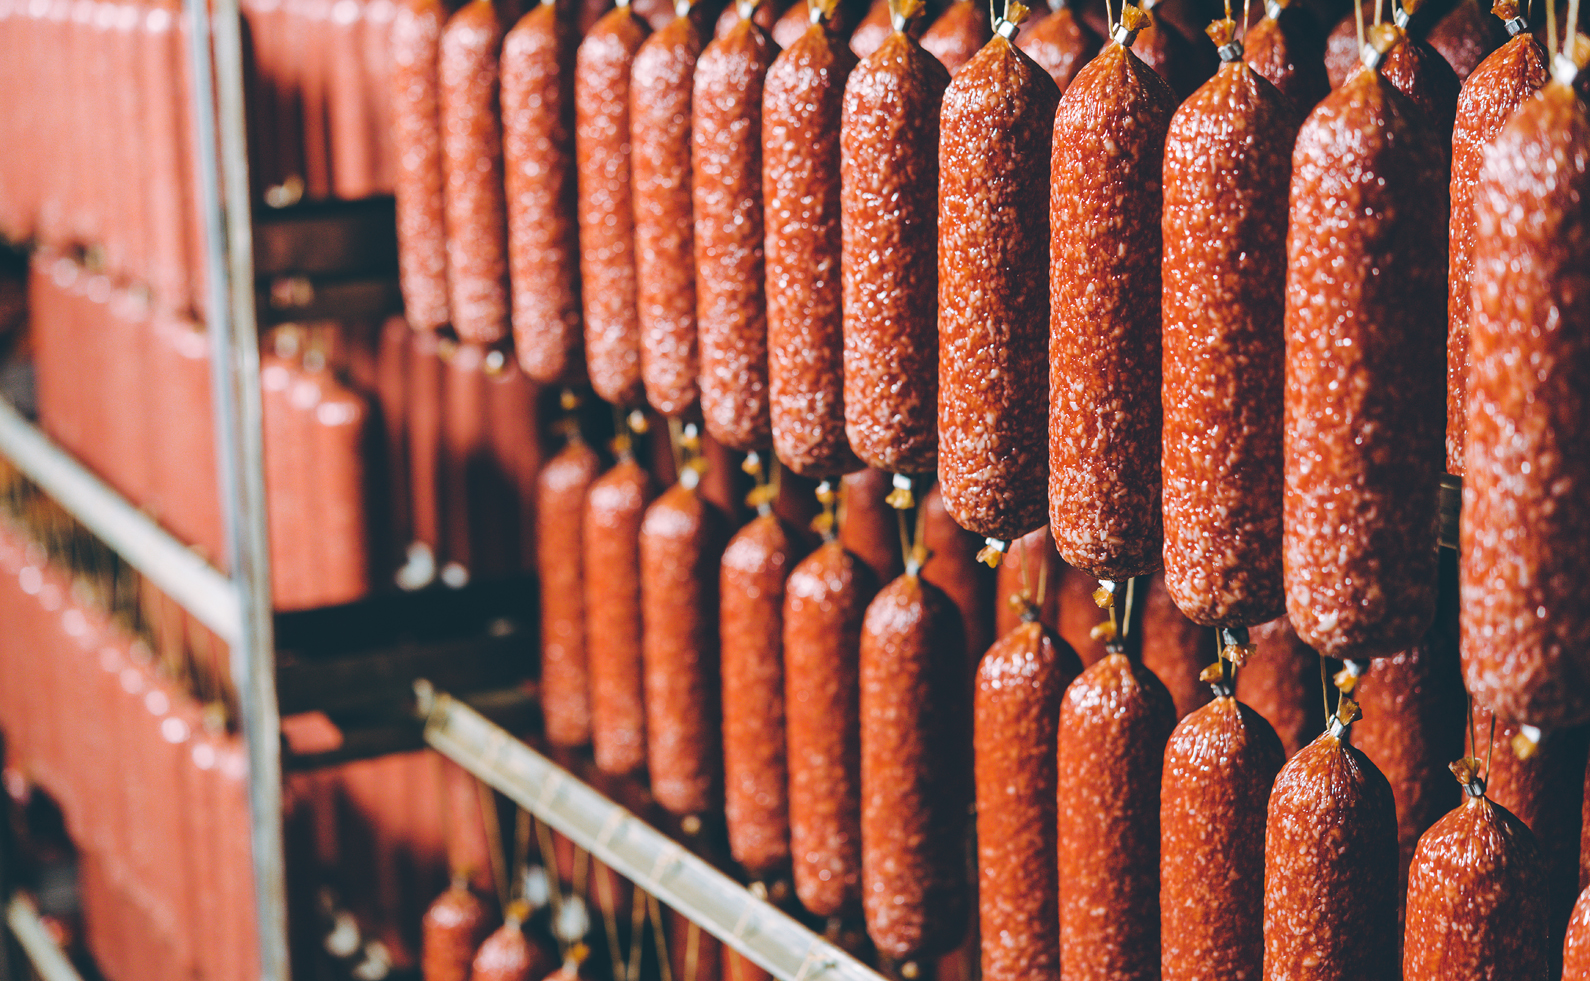  В Костромской области производство колбасных изделий выросло на 16,2%, мясных полуфабрикатов – на 24%